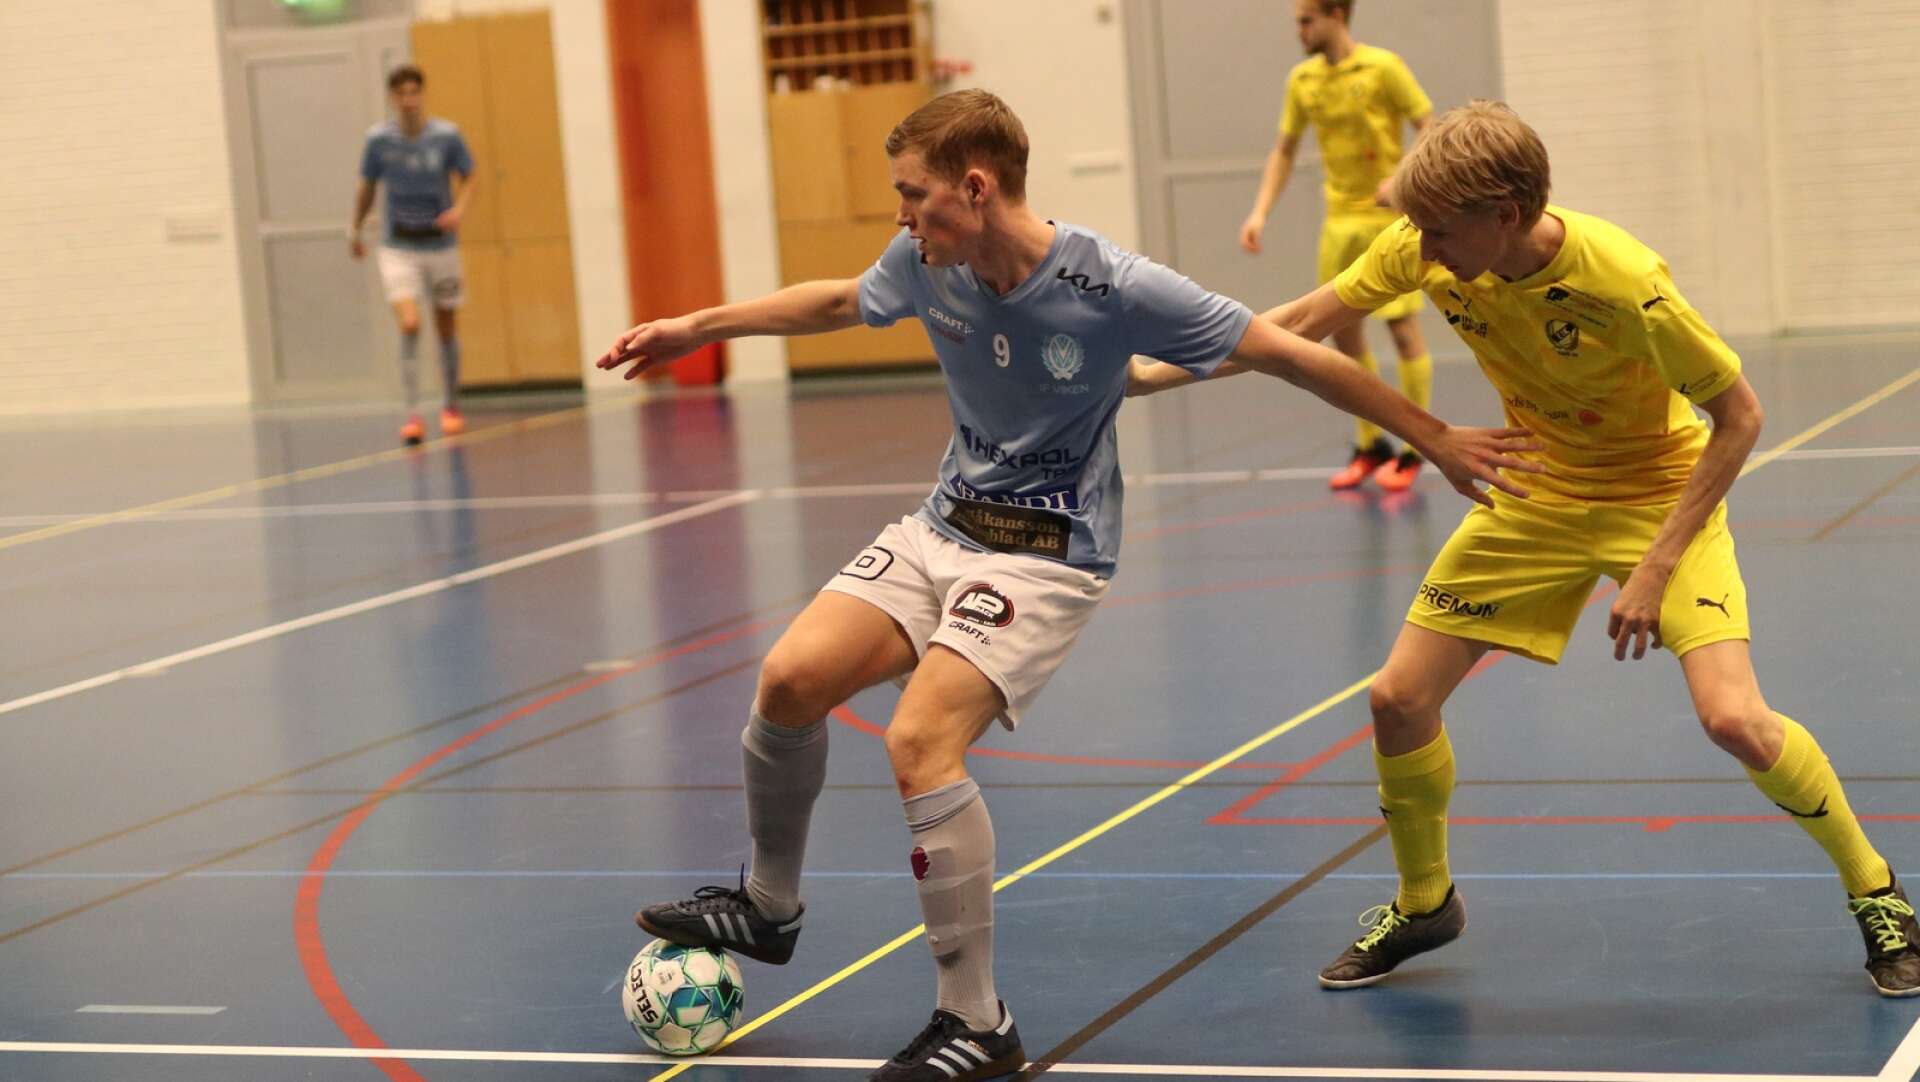 Vikencupen i futsal spelades igen efter två års uppehåll. Arrangörsklubben IF Viken var bäst och vann, efter semifinalseger mot Säffle och finalvinst mot Ellenö IK. Här Emil Eldh i Viken i matchen mot Ellenö.